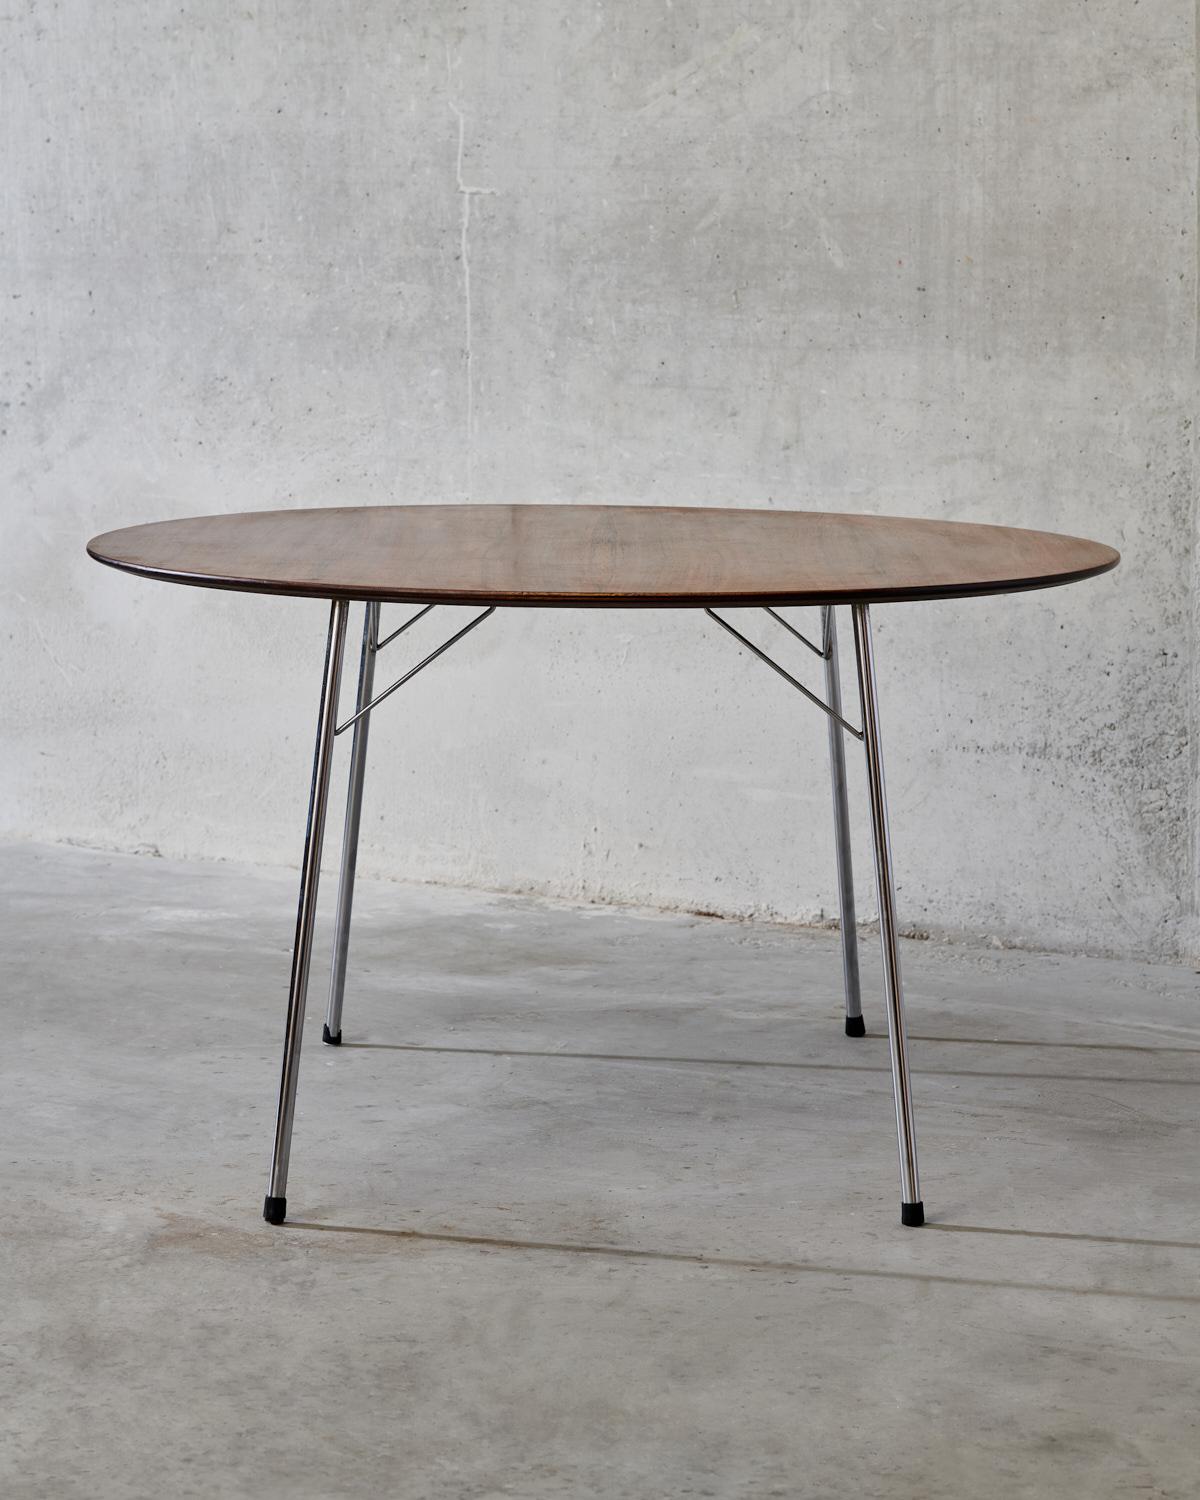 Table de salle à manger en teck - Modèle 3600 conçu par Arne Jacobsen pour Fritz Hansen au Danemark vers 1960. La table a été achetée aux propriétaires d'origine qui l'ont achetée en 1964 comme cadeau de mariage.
Marque d'origine du fabricant sur la